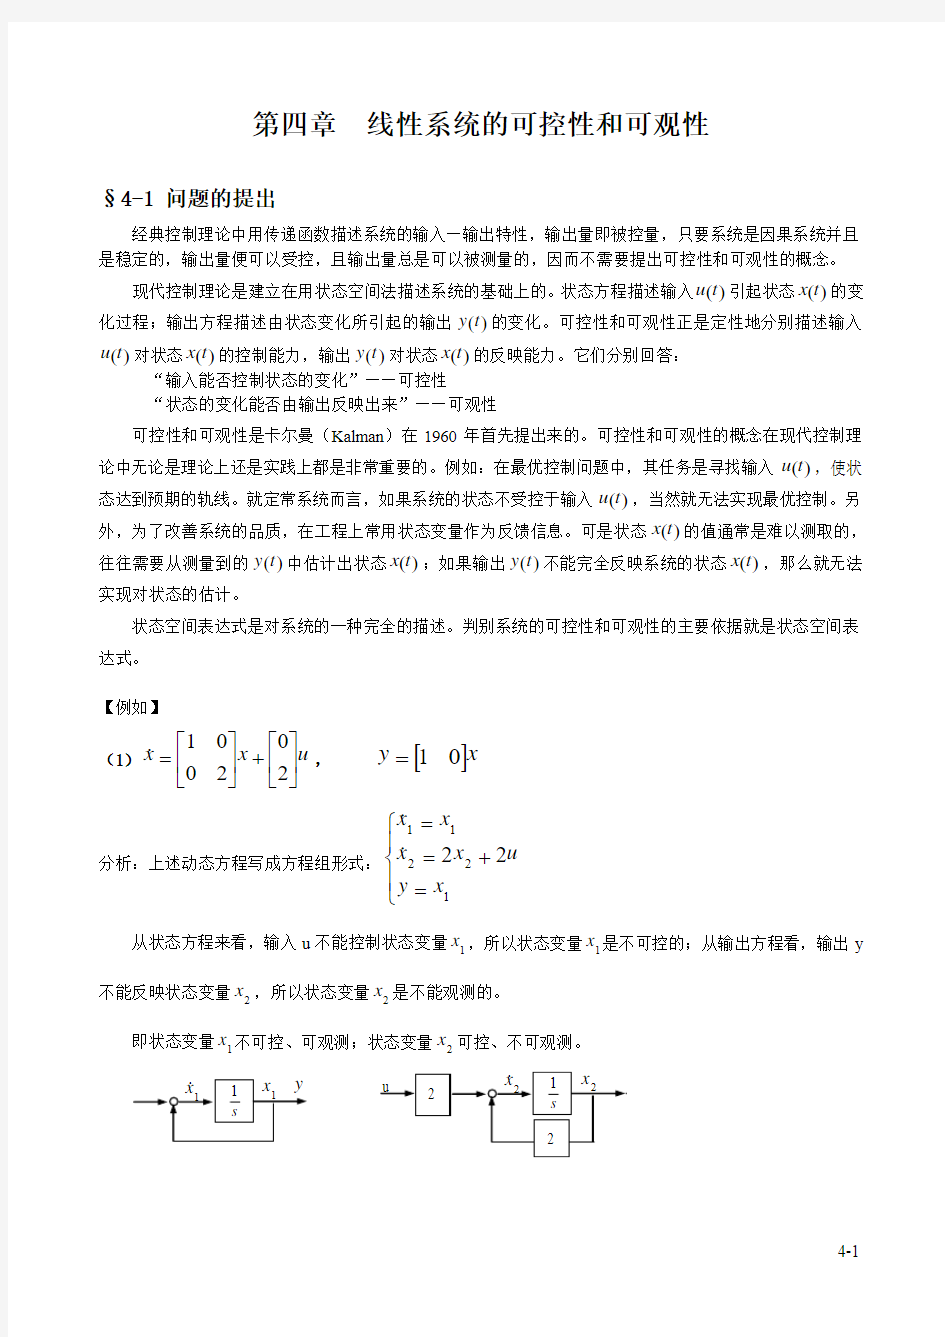 重庆大学现代控制工程-第四章线性系统的可控性和可观性